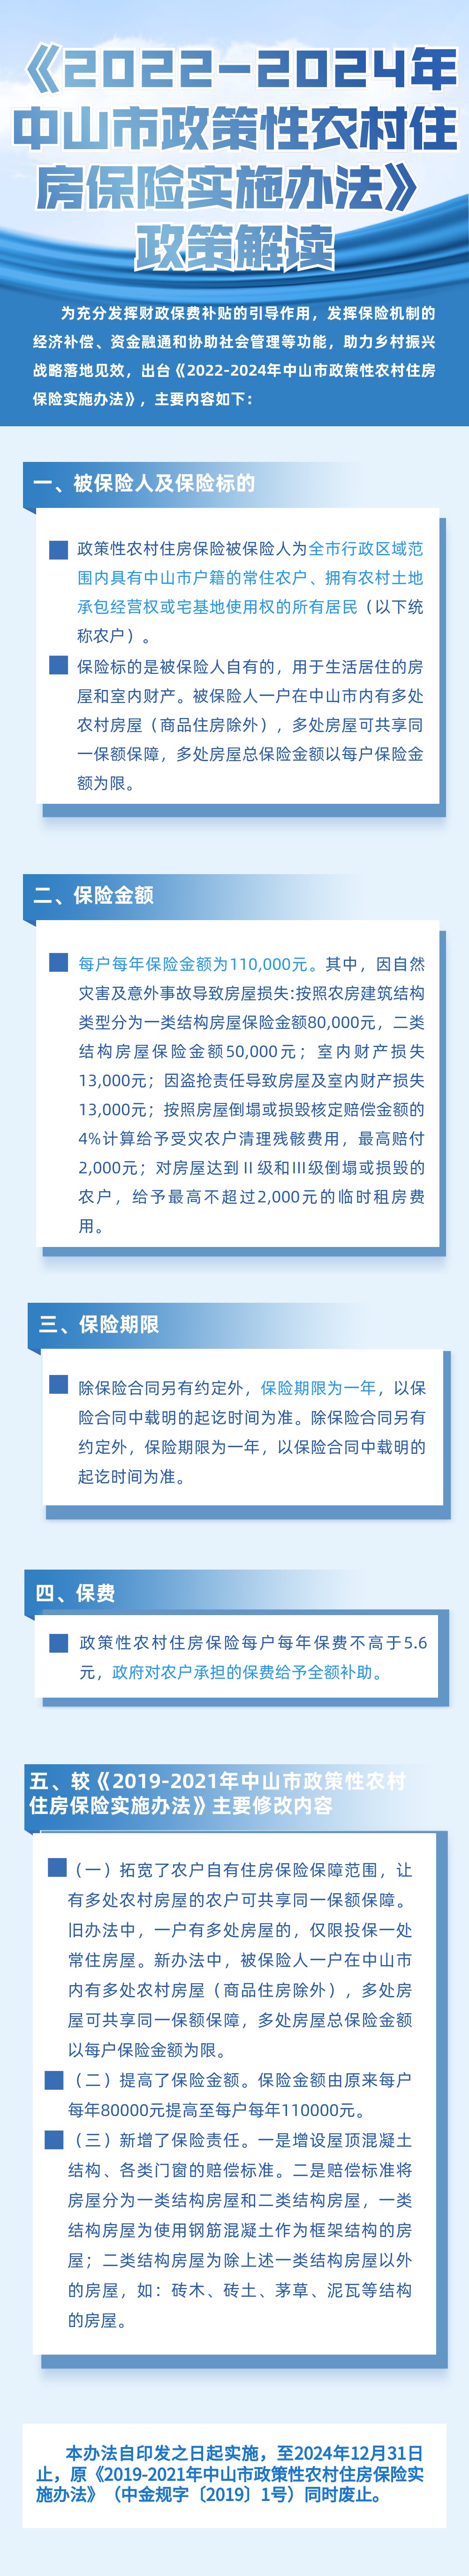 【图解】《2022-2024年中山市政策性农村住房保险实施办法》.jpg